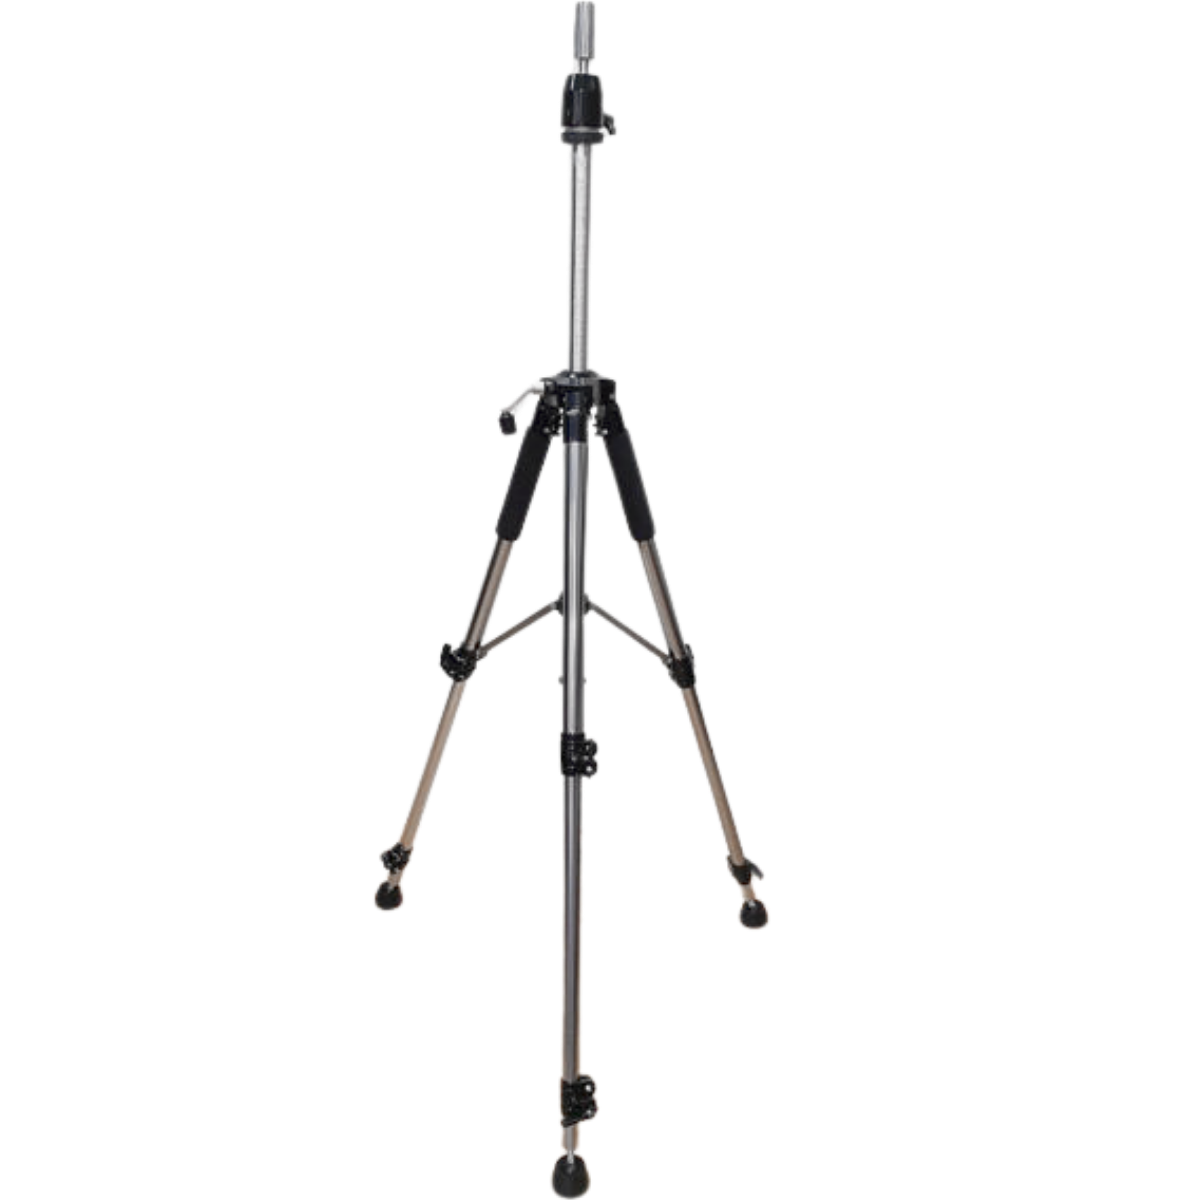 עמוד טלסקופי מהודר לראש בובה 3 רגליים